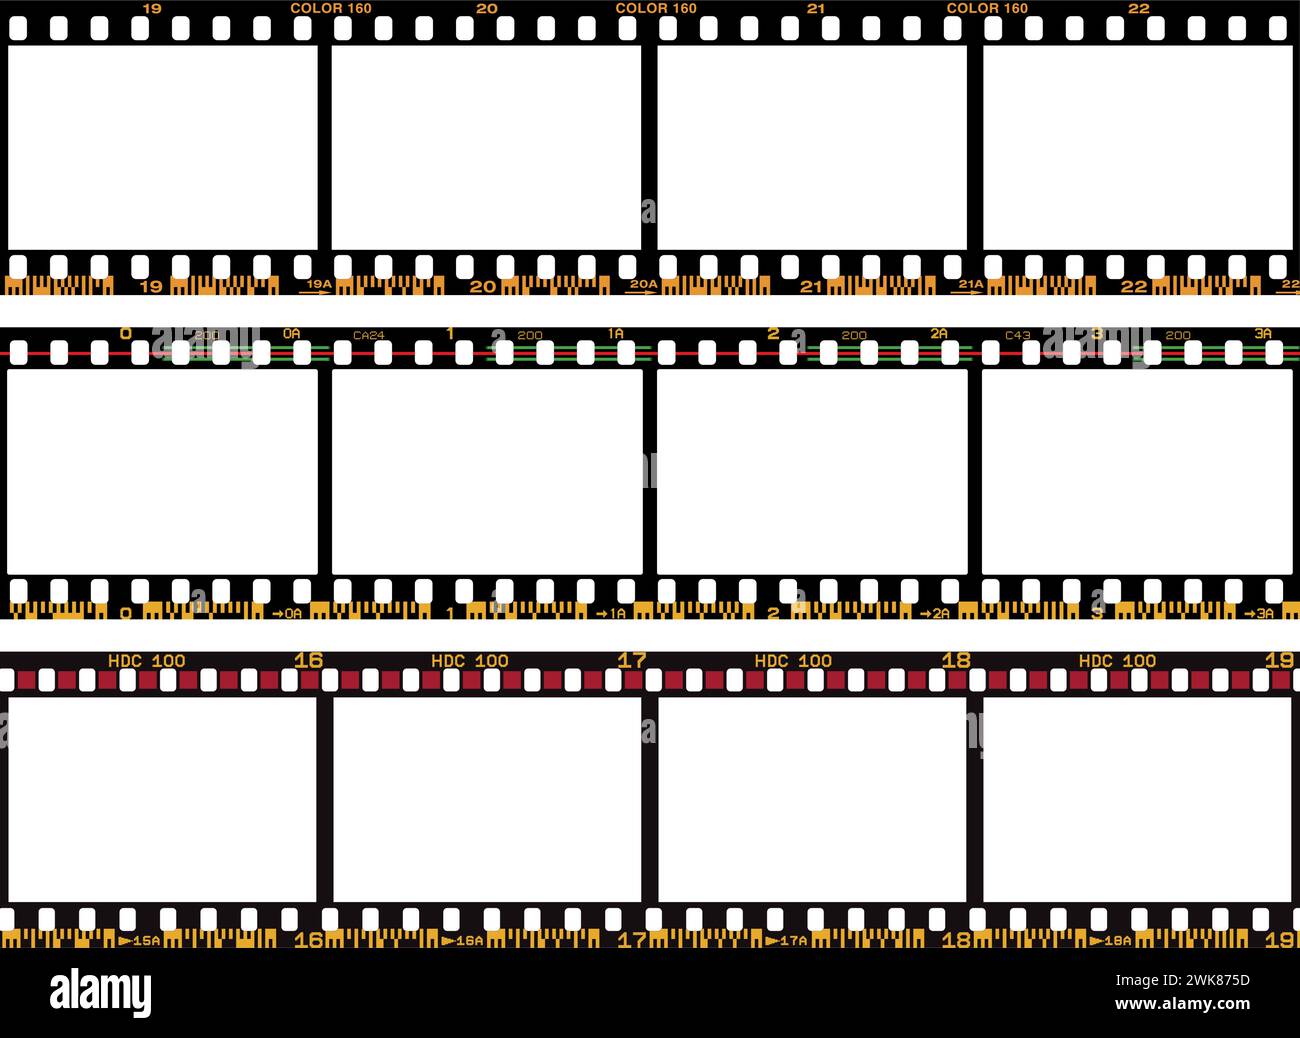 Vektorpackung mit analogen fotografischen Filmen mit Barcodes Stock Vektor